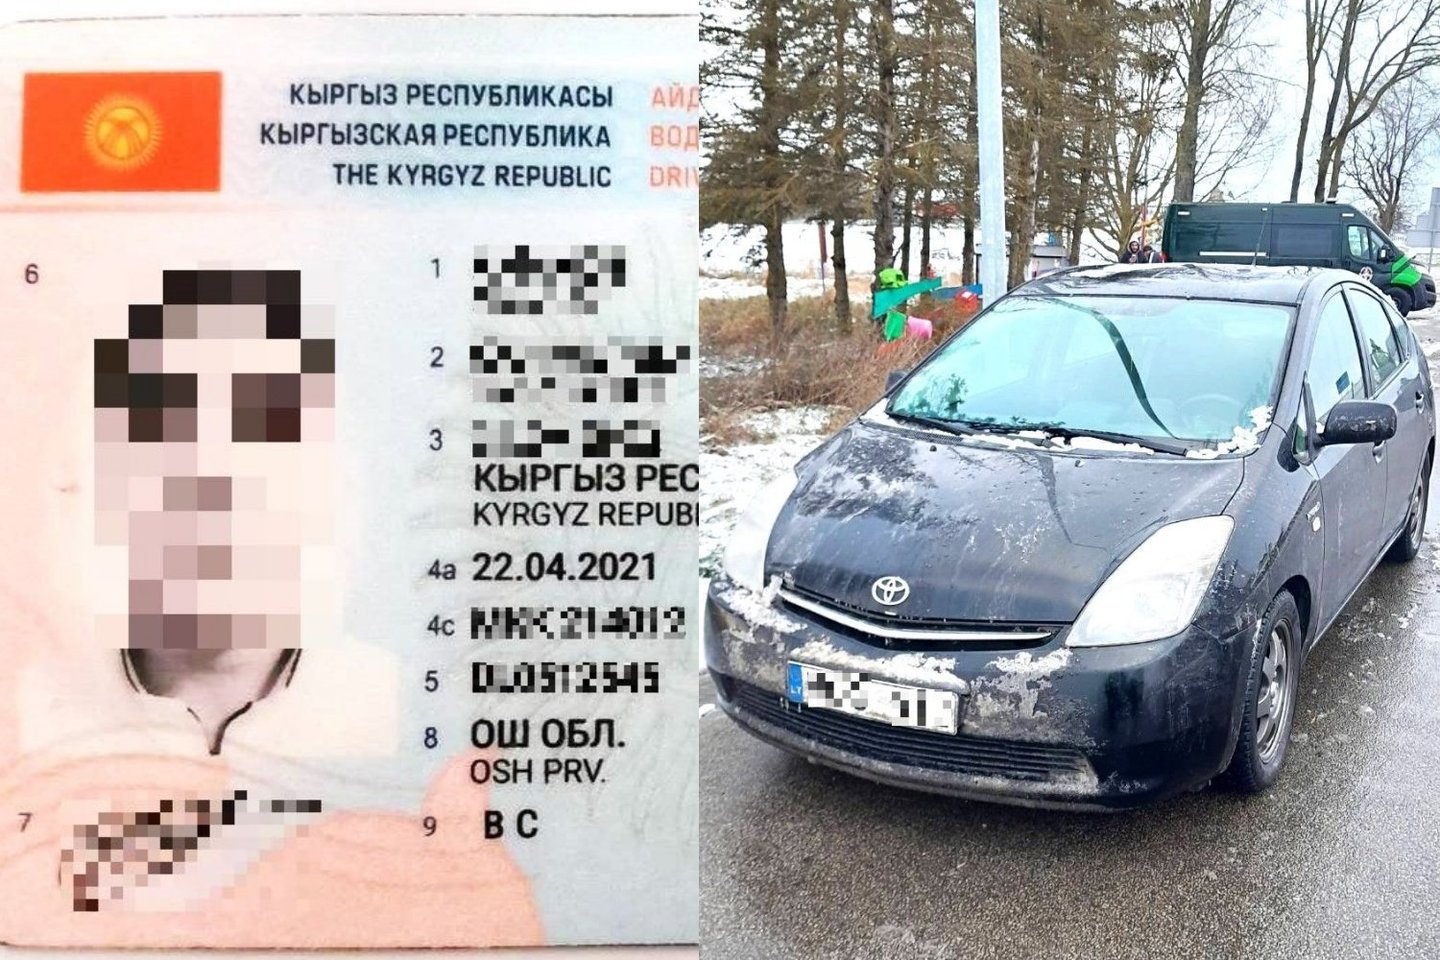 Pasienio pareigūnams su suklastotu vairuotojo pažymėjimu įkliuvo užsienietis.<br>Lrytas.lt fotomontažas.